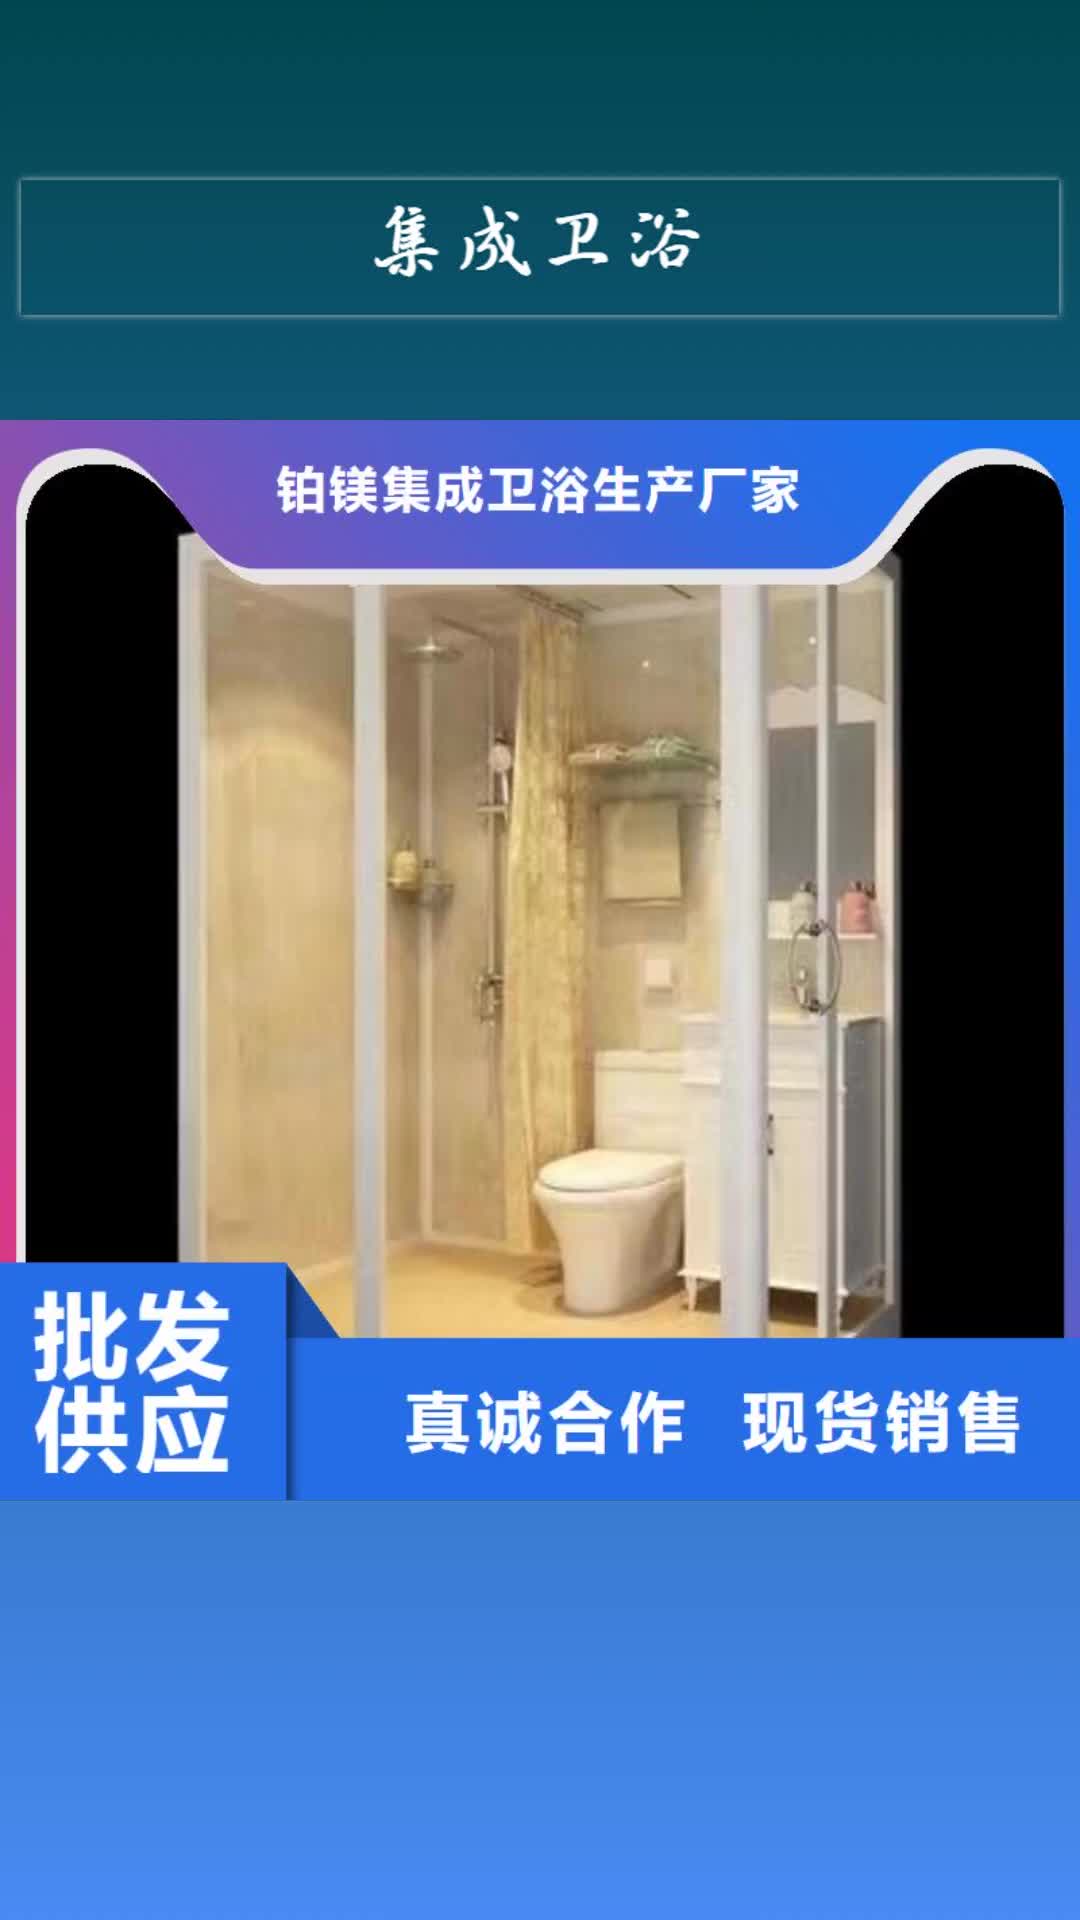 临汾 集成卫浴,【公共厕所】送货上门